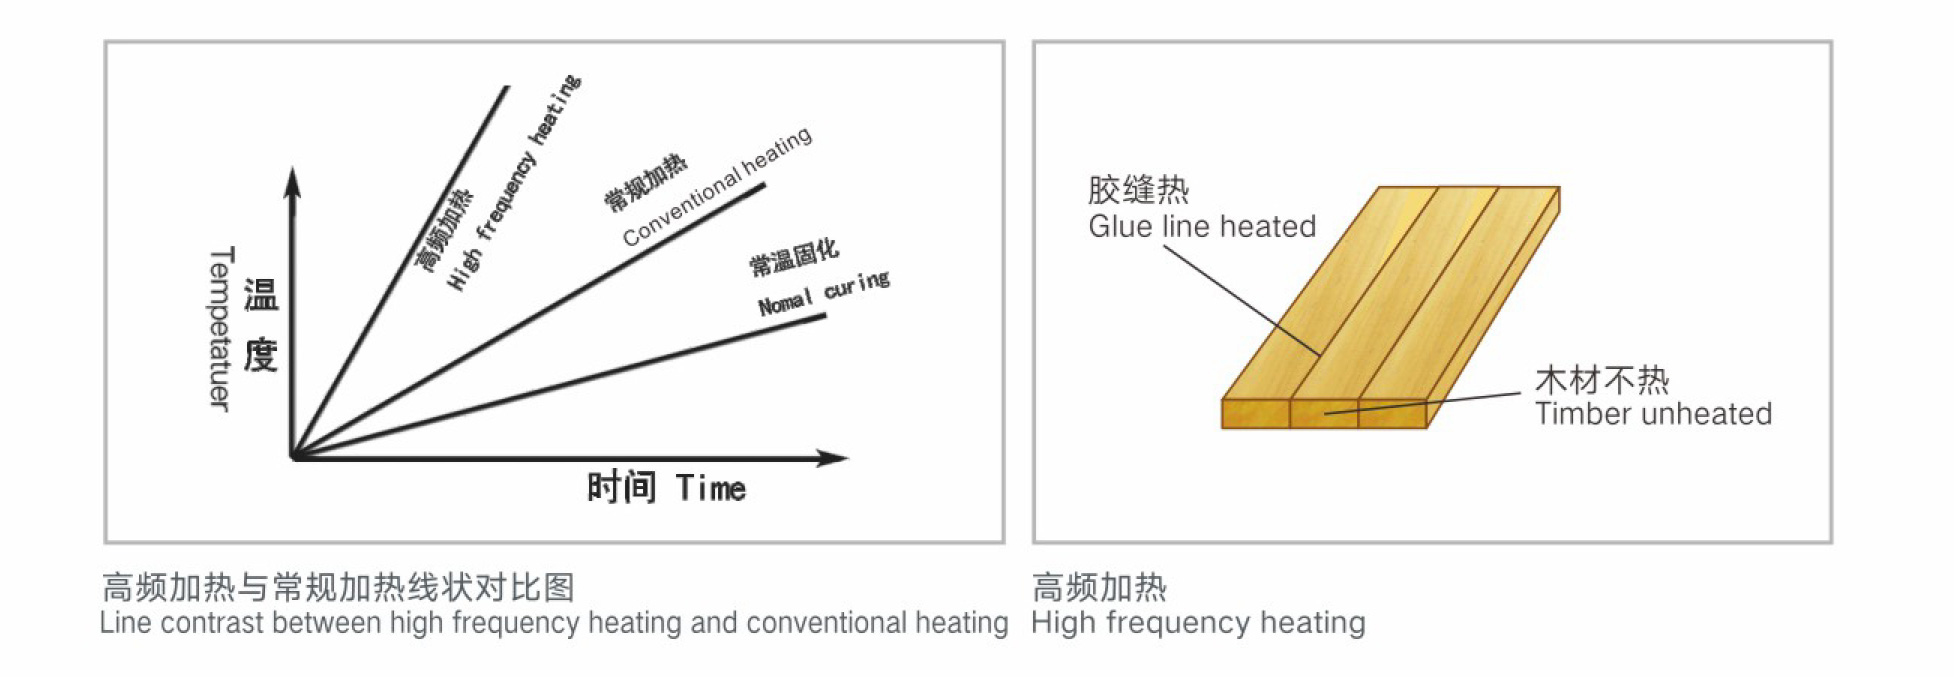 高頻加熱和傳統加熱的對比圖